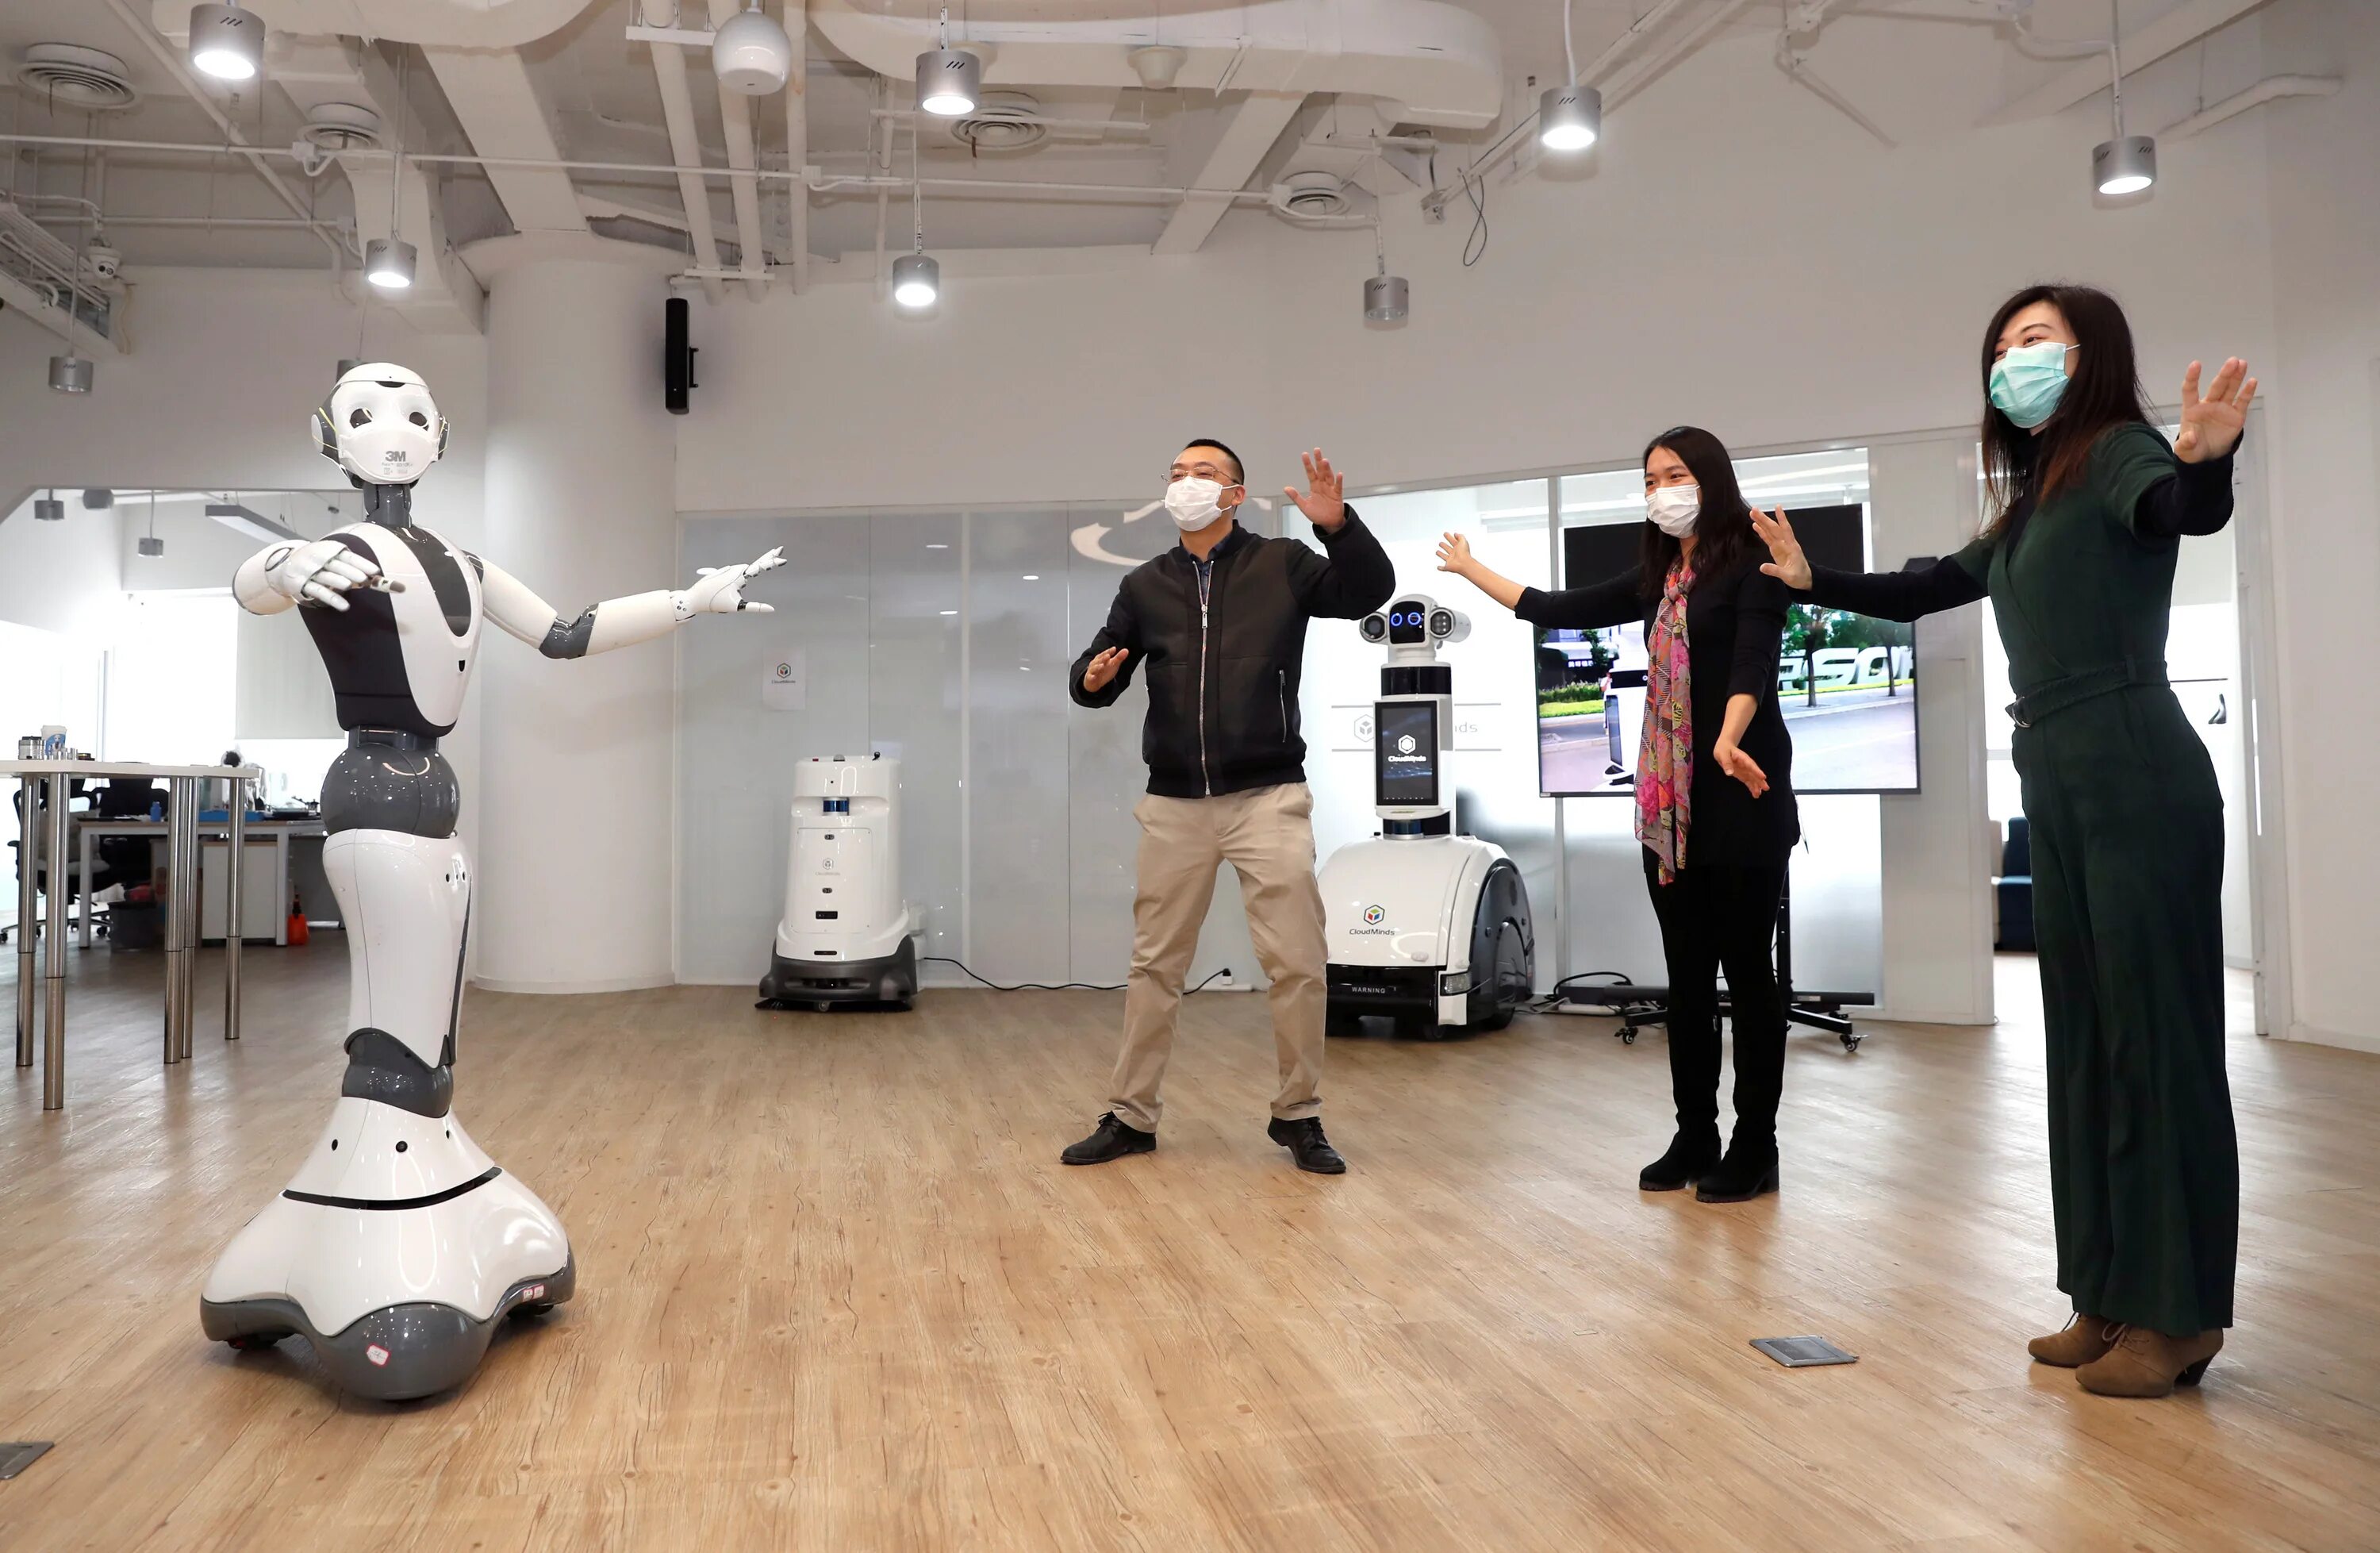 Роботы в повседневной жизни. Роботы заменят людей. Робот помогает человеку. Современные технологии в повседневной жизни. 21 урок для xxi